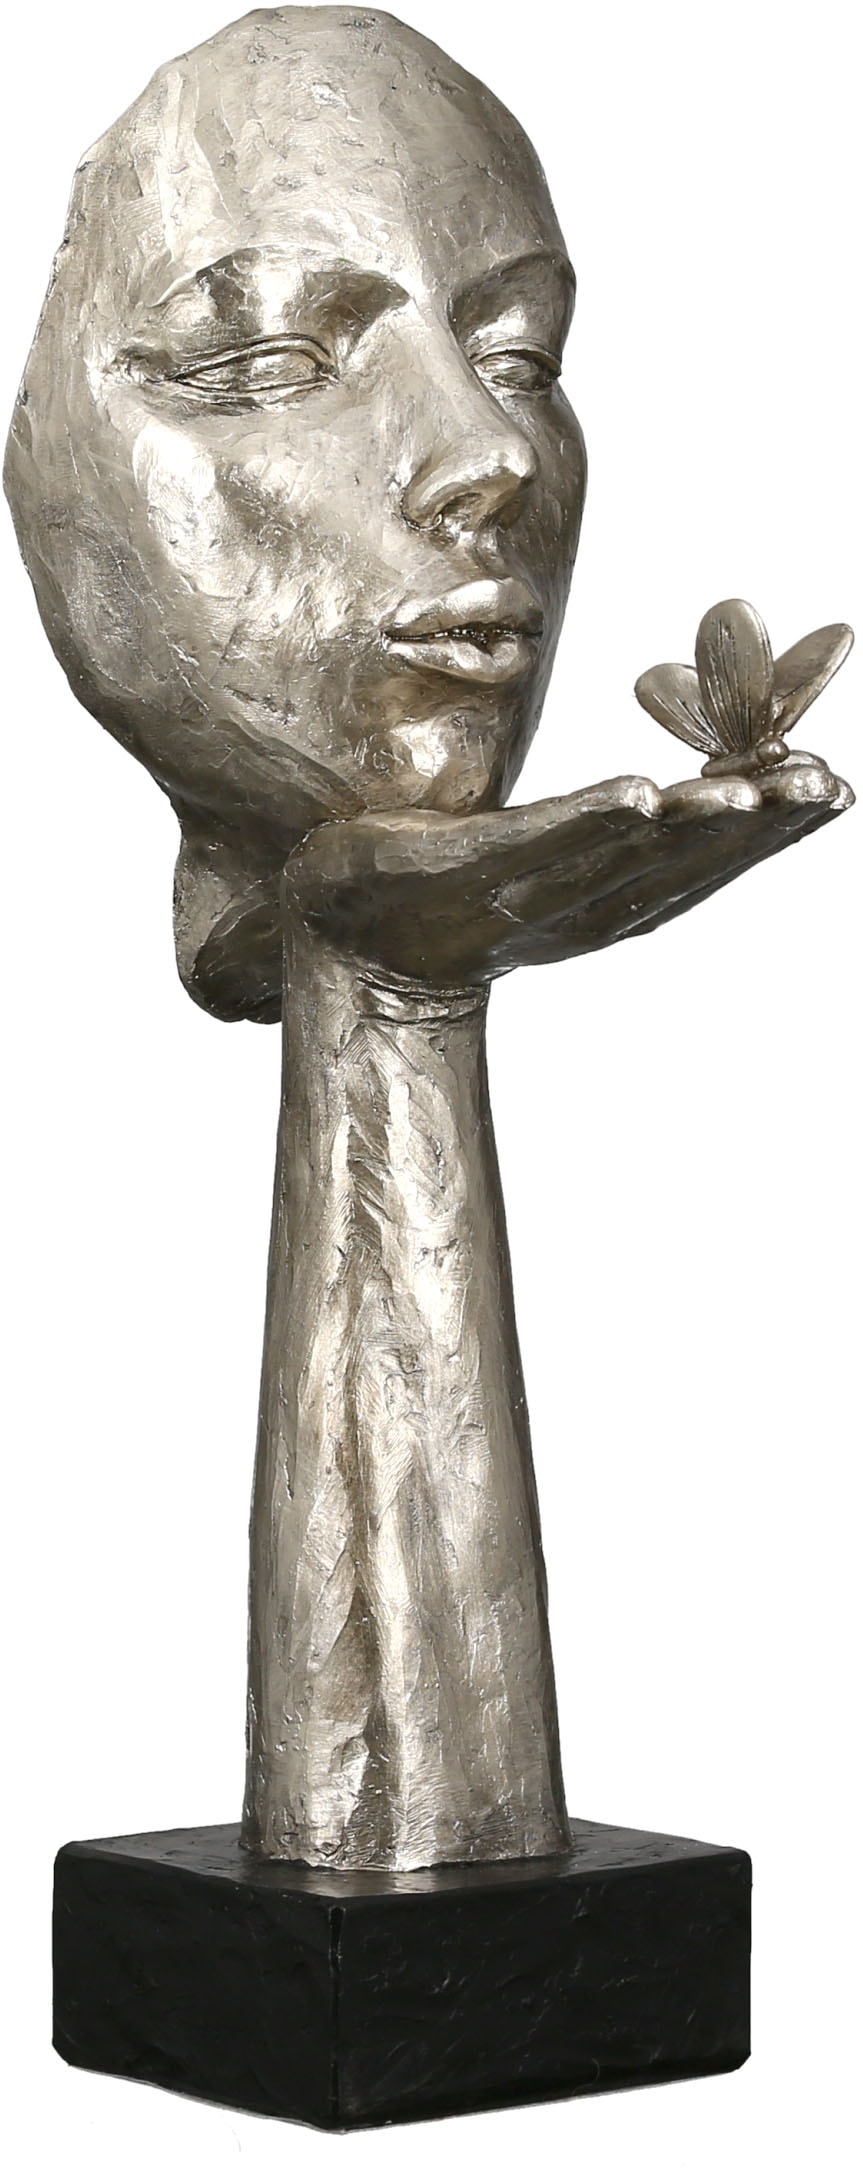 GILDE Dekofigur »Skulptur Desire, antikfinish«, (1 OTTO silberfarben, St.), Online im Polyresin Shop